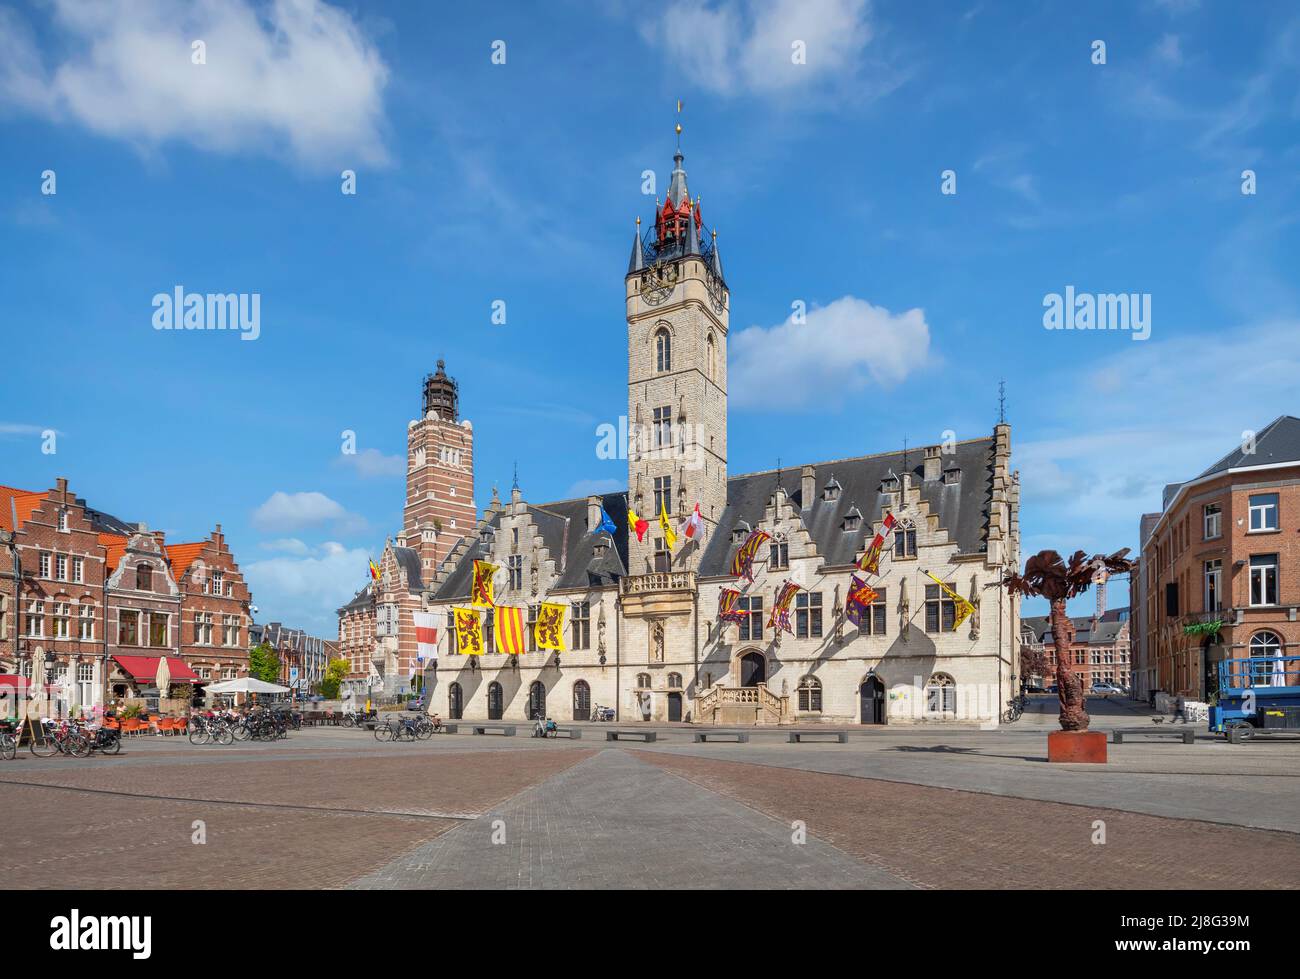 Dendermonde, Bélgica. Vista del edificio histórico del Ayuntamiento con campanario en la plaza Grote Markt Foto de stock